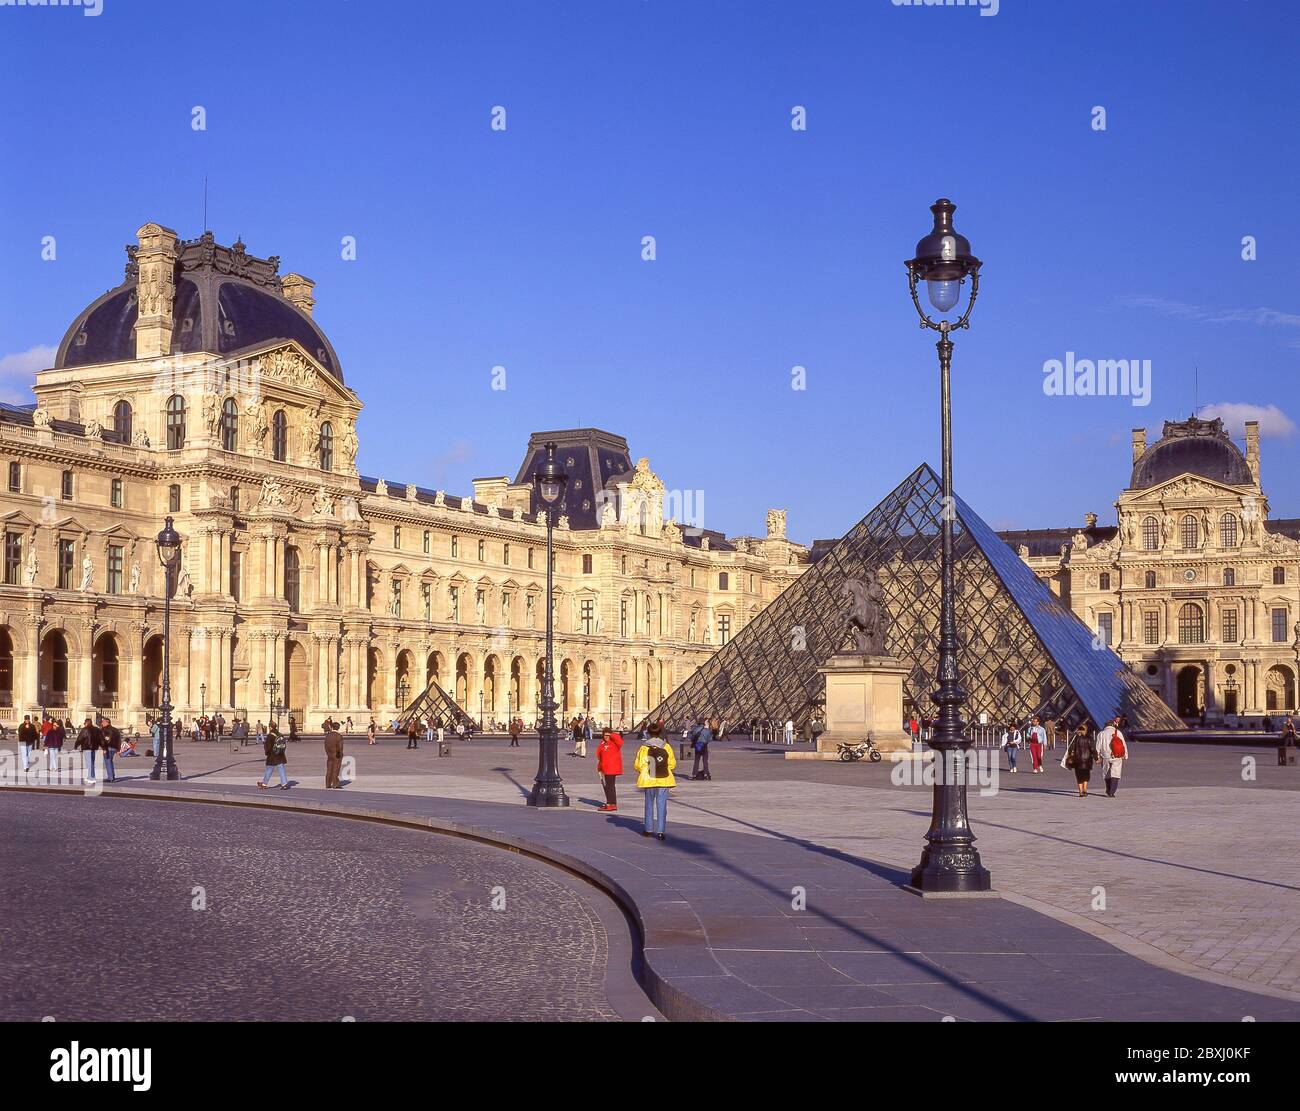 The Louvre Museum (Musee du Louvre) and Leoh Ming Pyramid, Place du Carrousel, Paris, Île-de-France, France Stock Photo